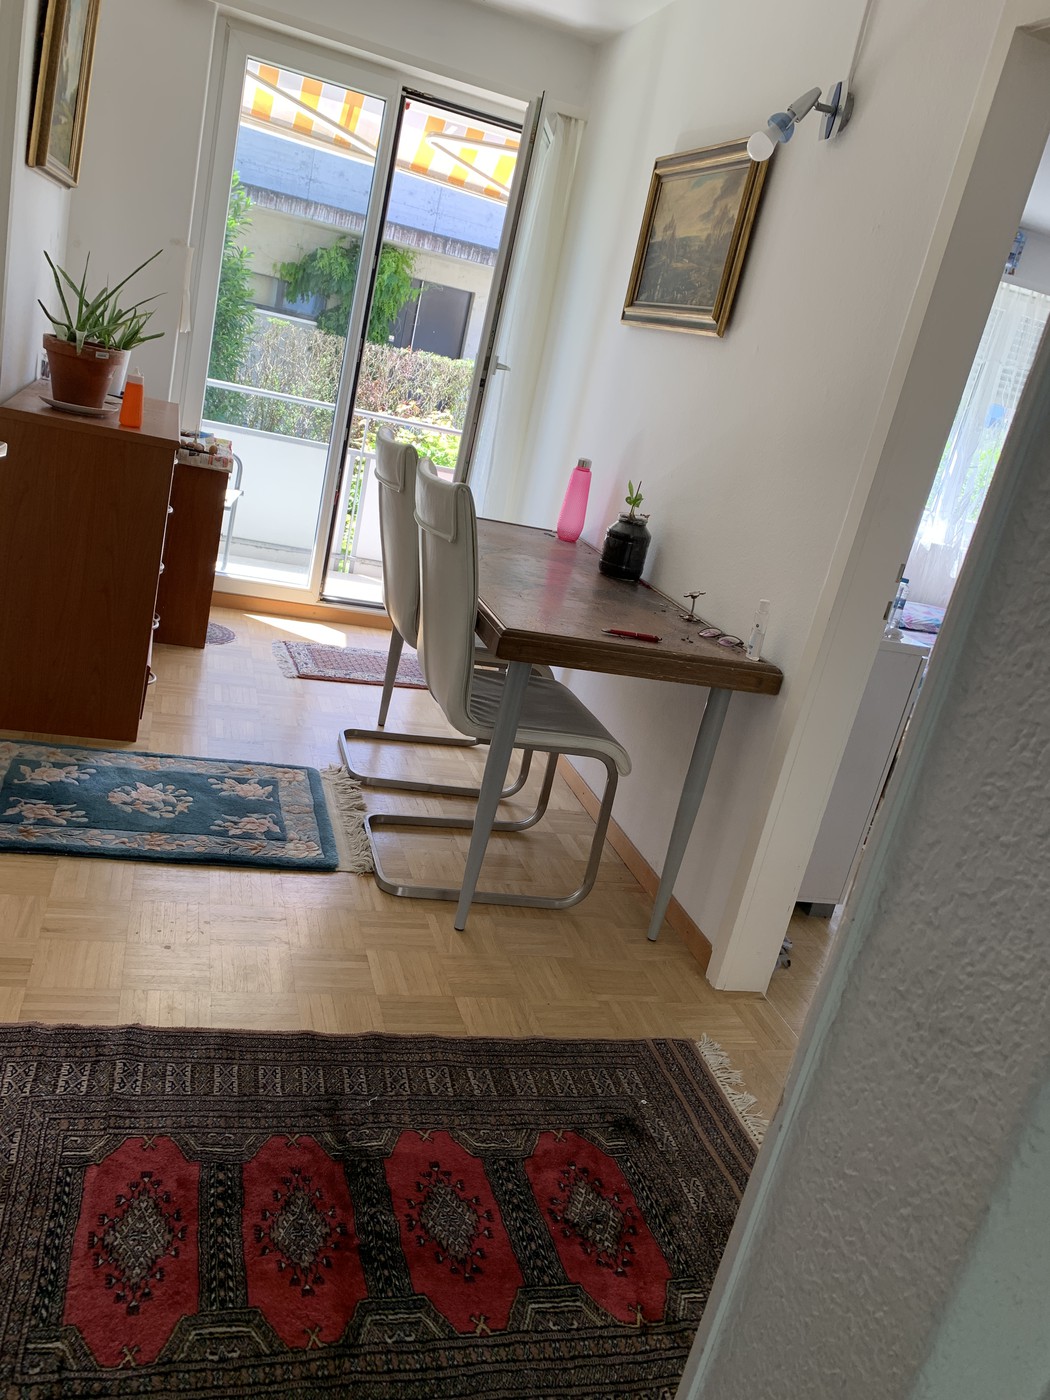 Wohnung zu Mieten in Zürich: 1 ½ rooms apartment, 8050 zu ...